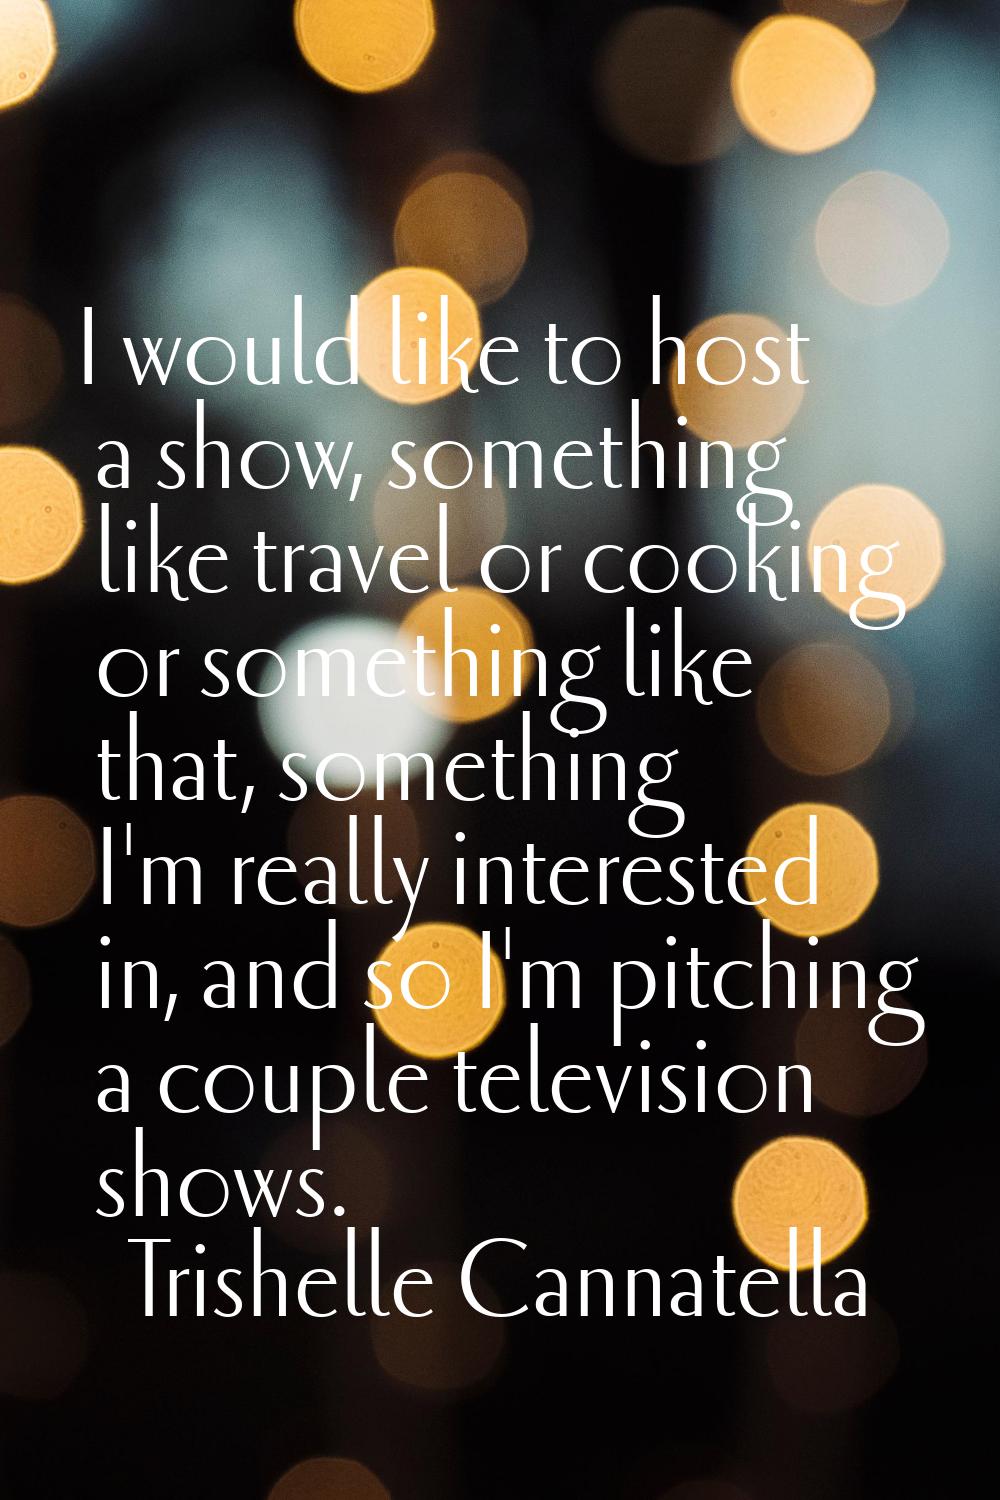 I would like to host a show, something like travel or cooking or something like that, something I'm